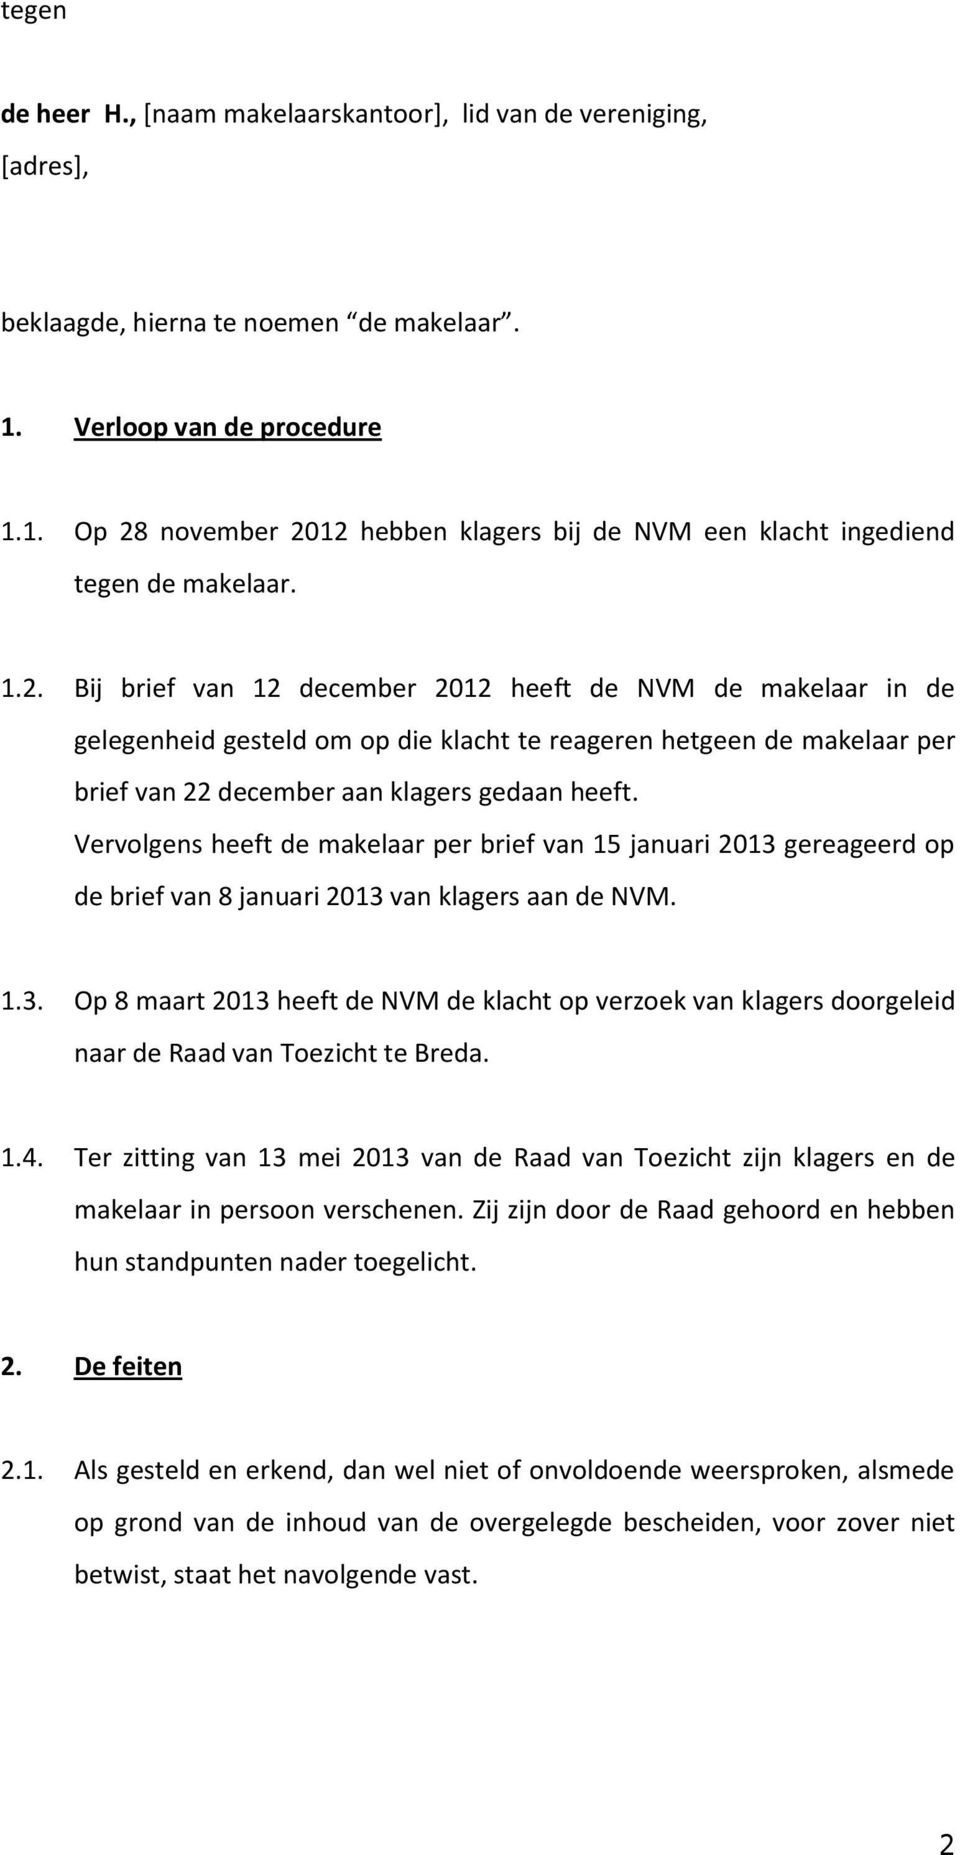 november 2012 hebben klagers bij de NVM een klacht ingediend tegen de makelaar. 1.2. Bij brief van 12 december 2012 heeft de NVM de makelaar in de gelegenheid gesteld om op die klacht te reageren hetgeen de makelaar per brief van 22 december aan klagers gedaan heeft.